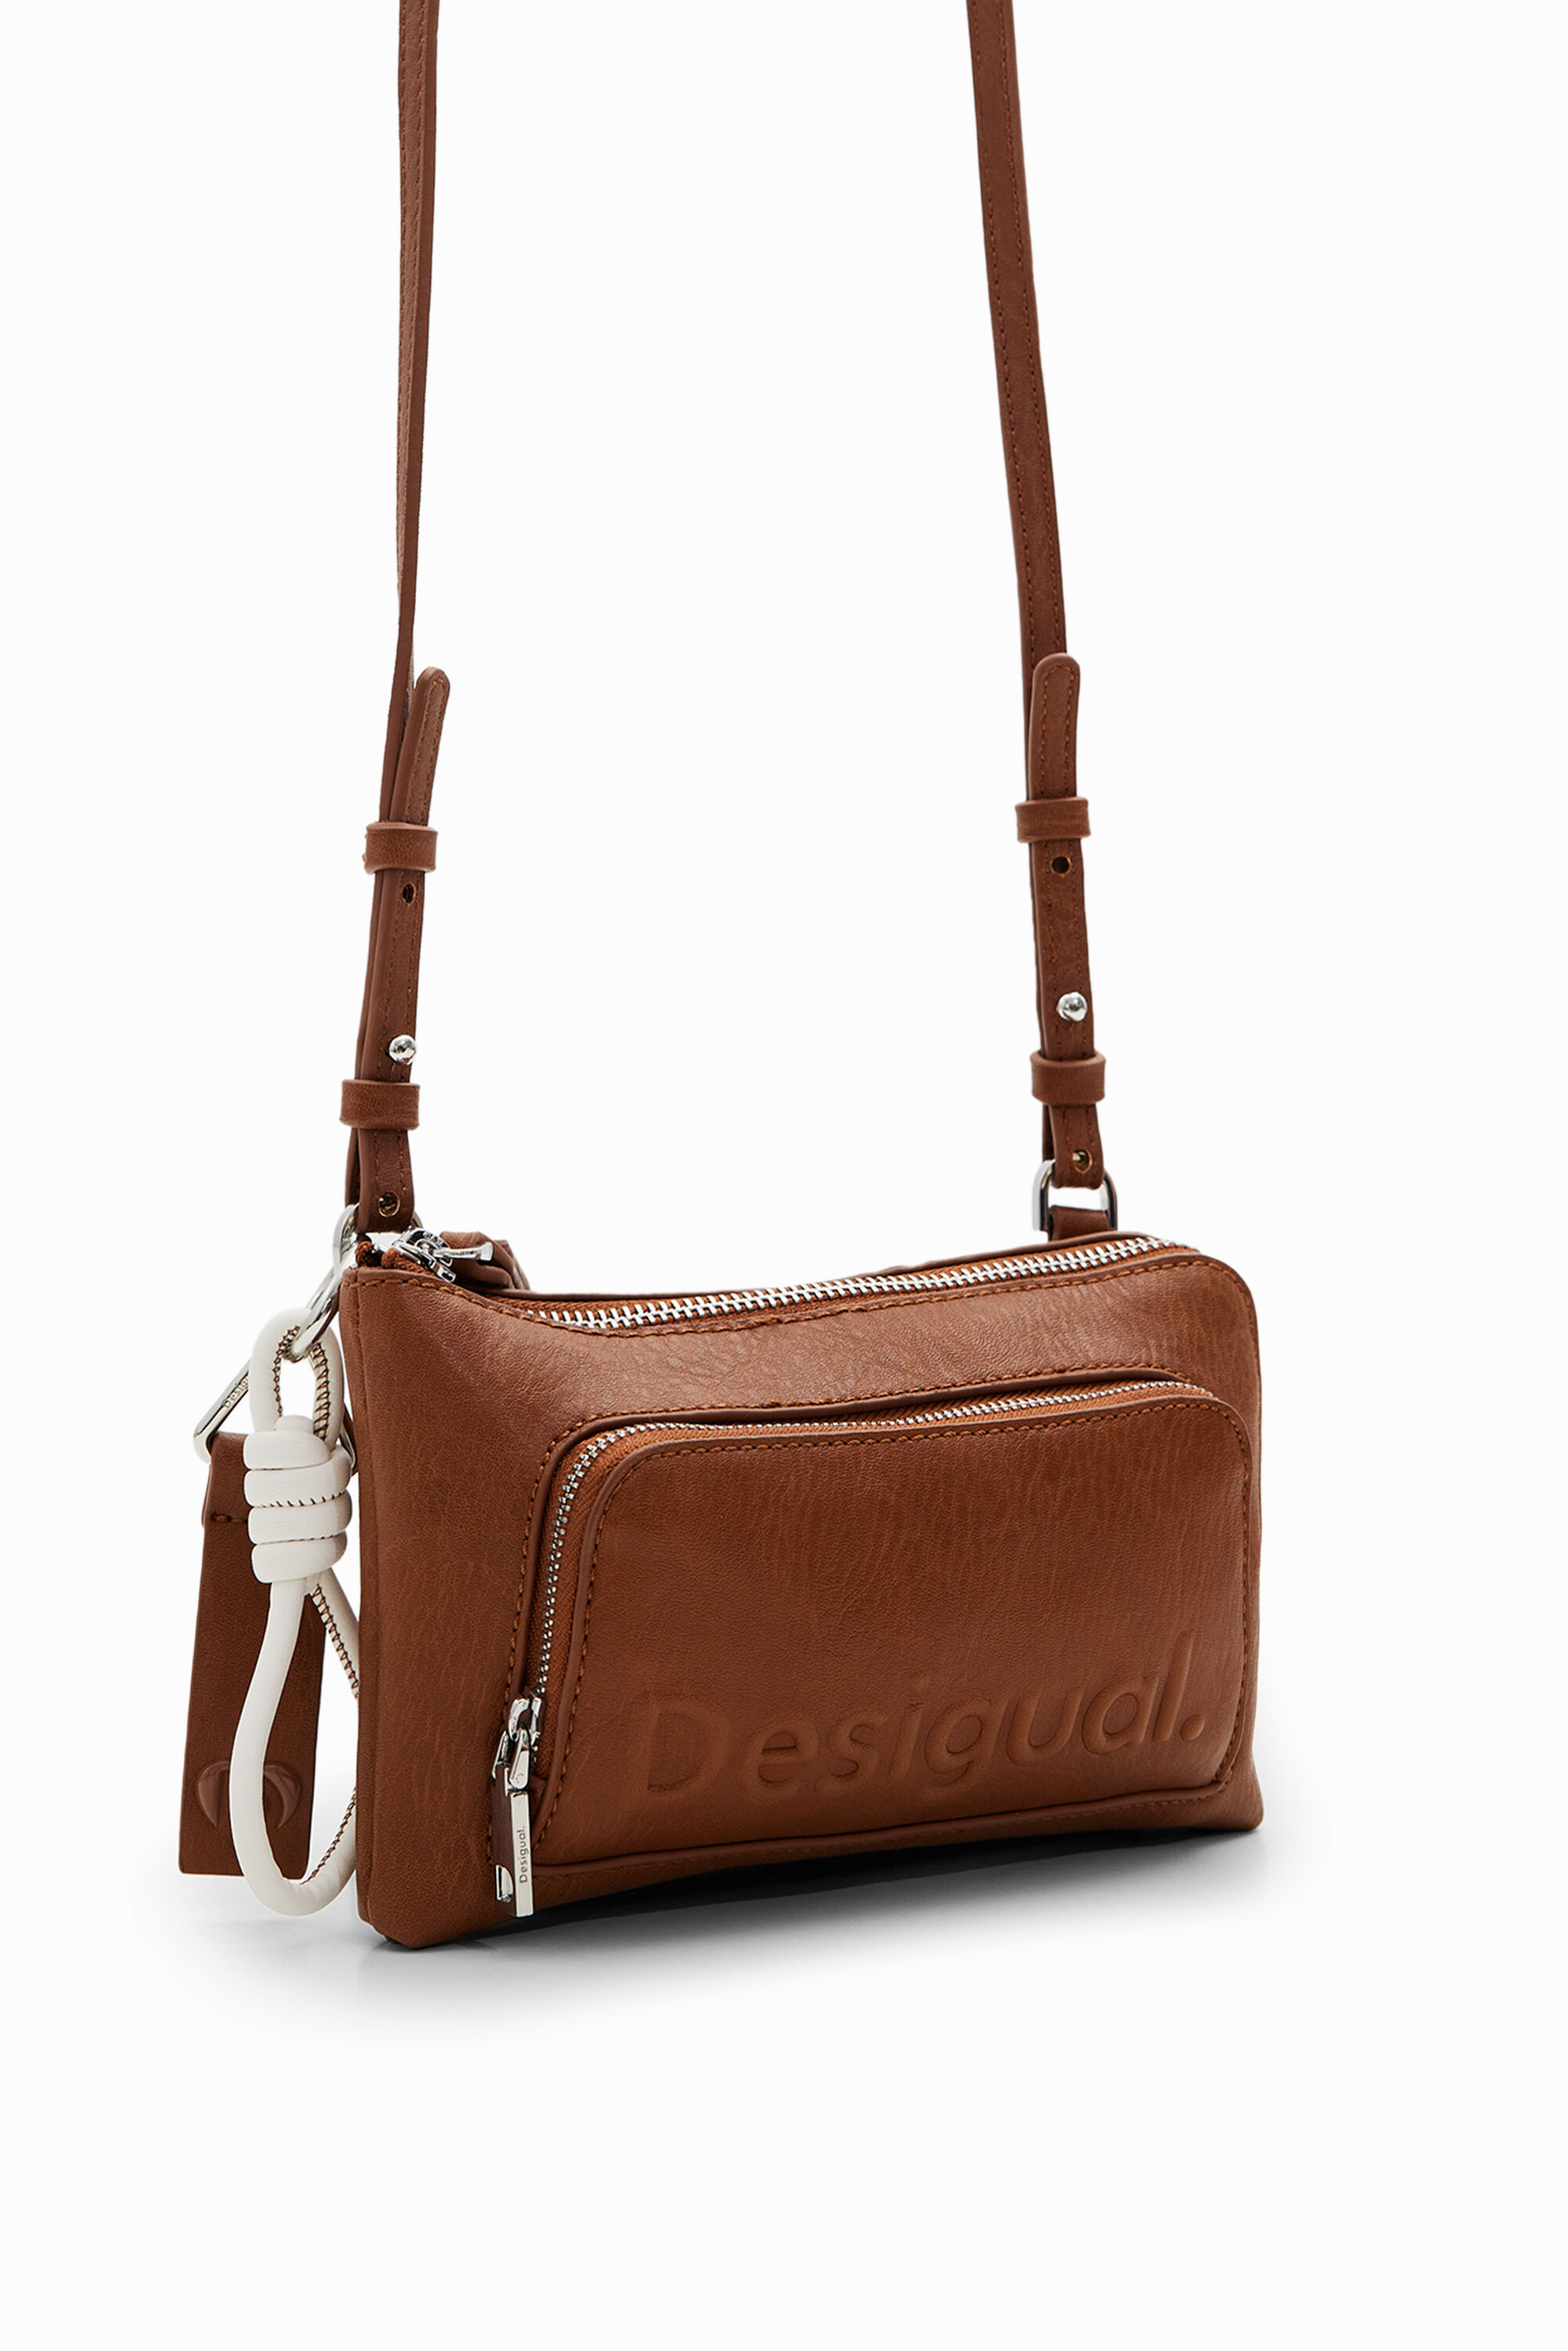 Desigual HALF LOGO HABANA Black - Fast delivery | Spartoo Europe ! - Bags  Handbags Women 70,40 €